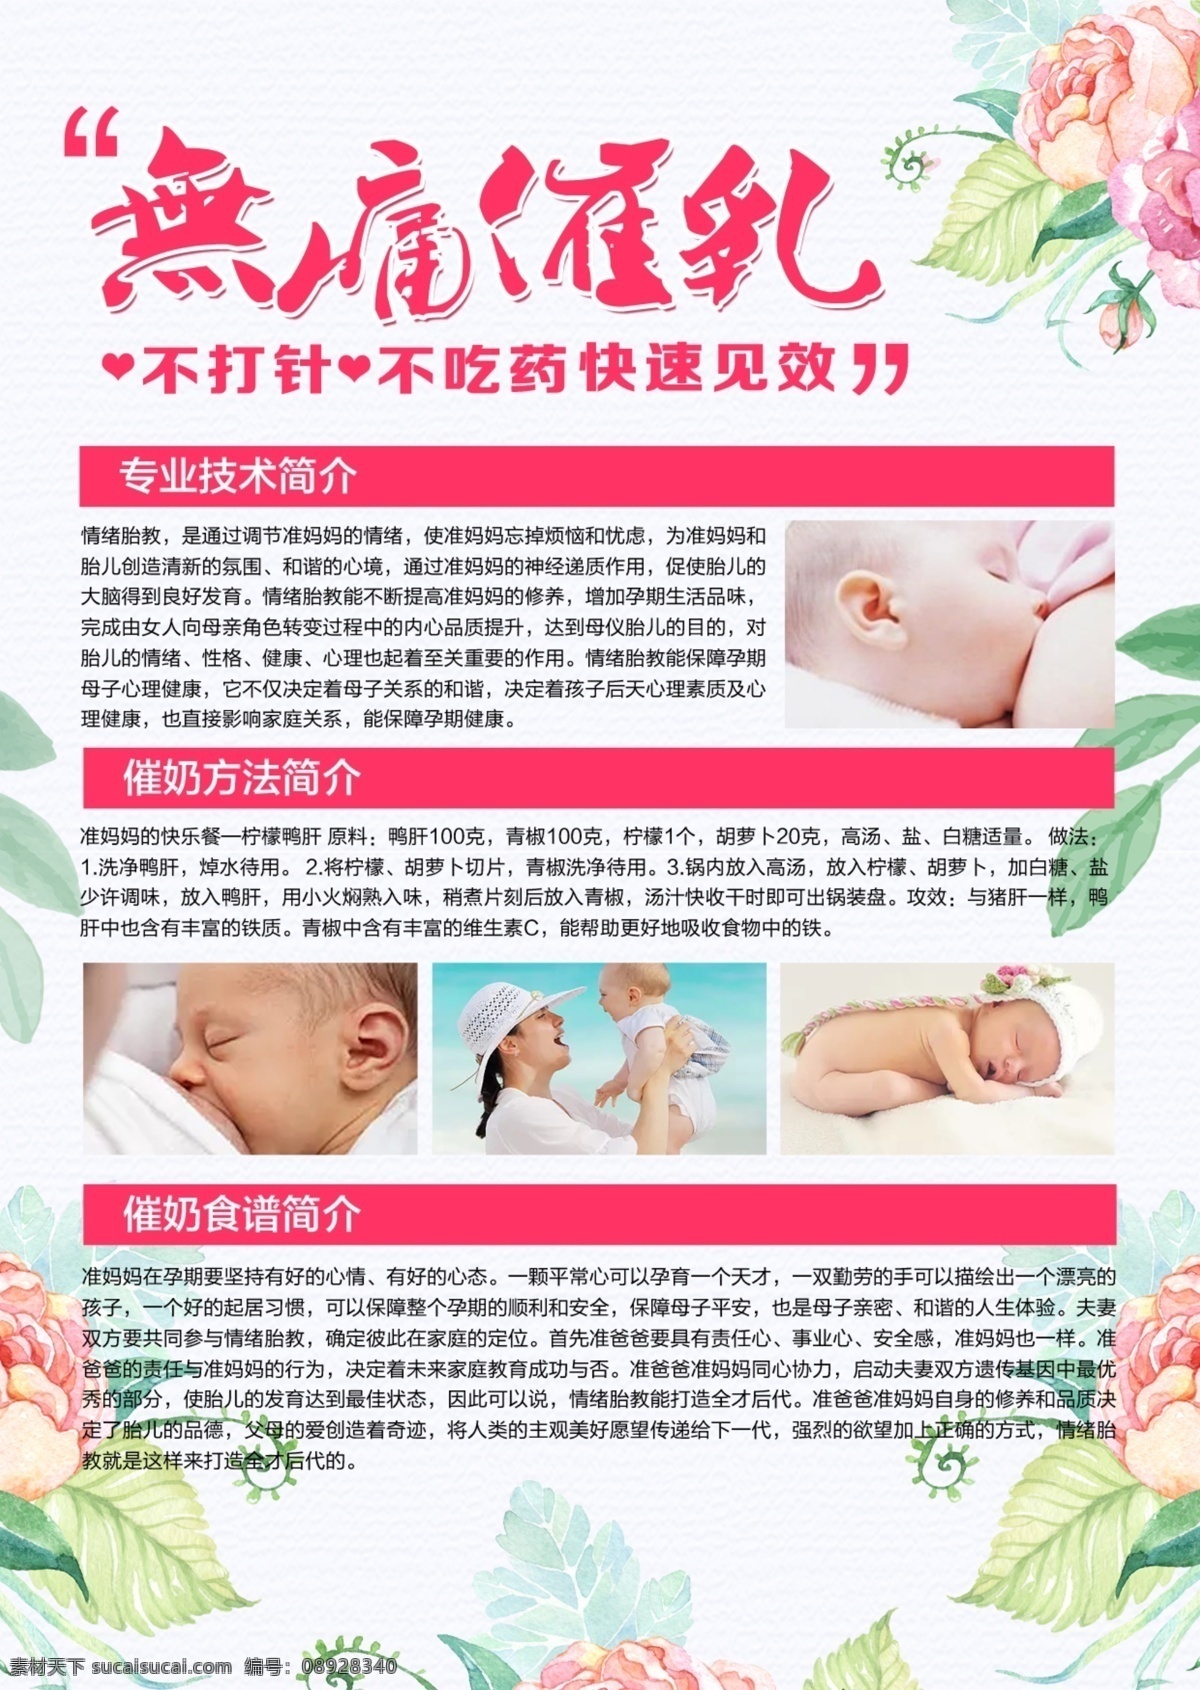 清新 简约 无痛 催乳 宝宝 婴儿 宣传单 海报